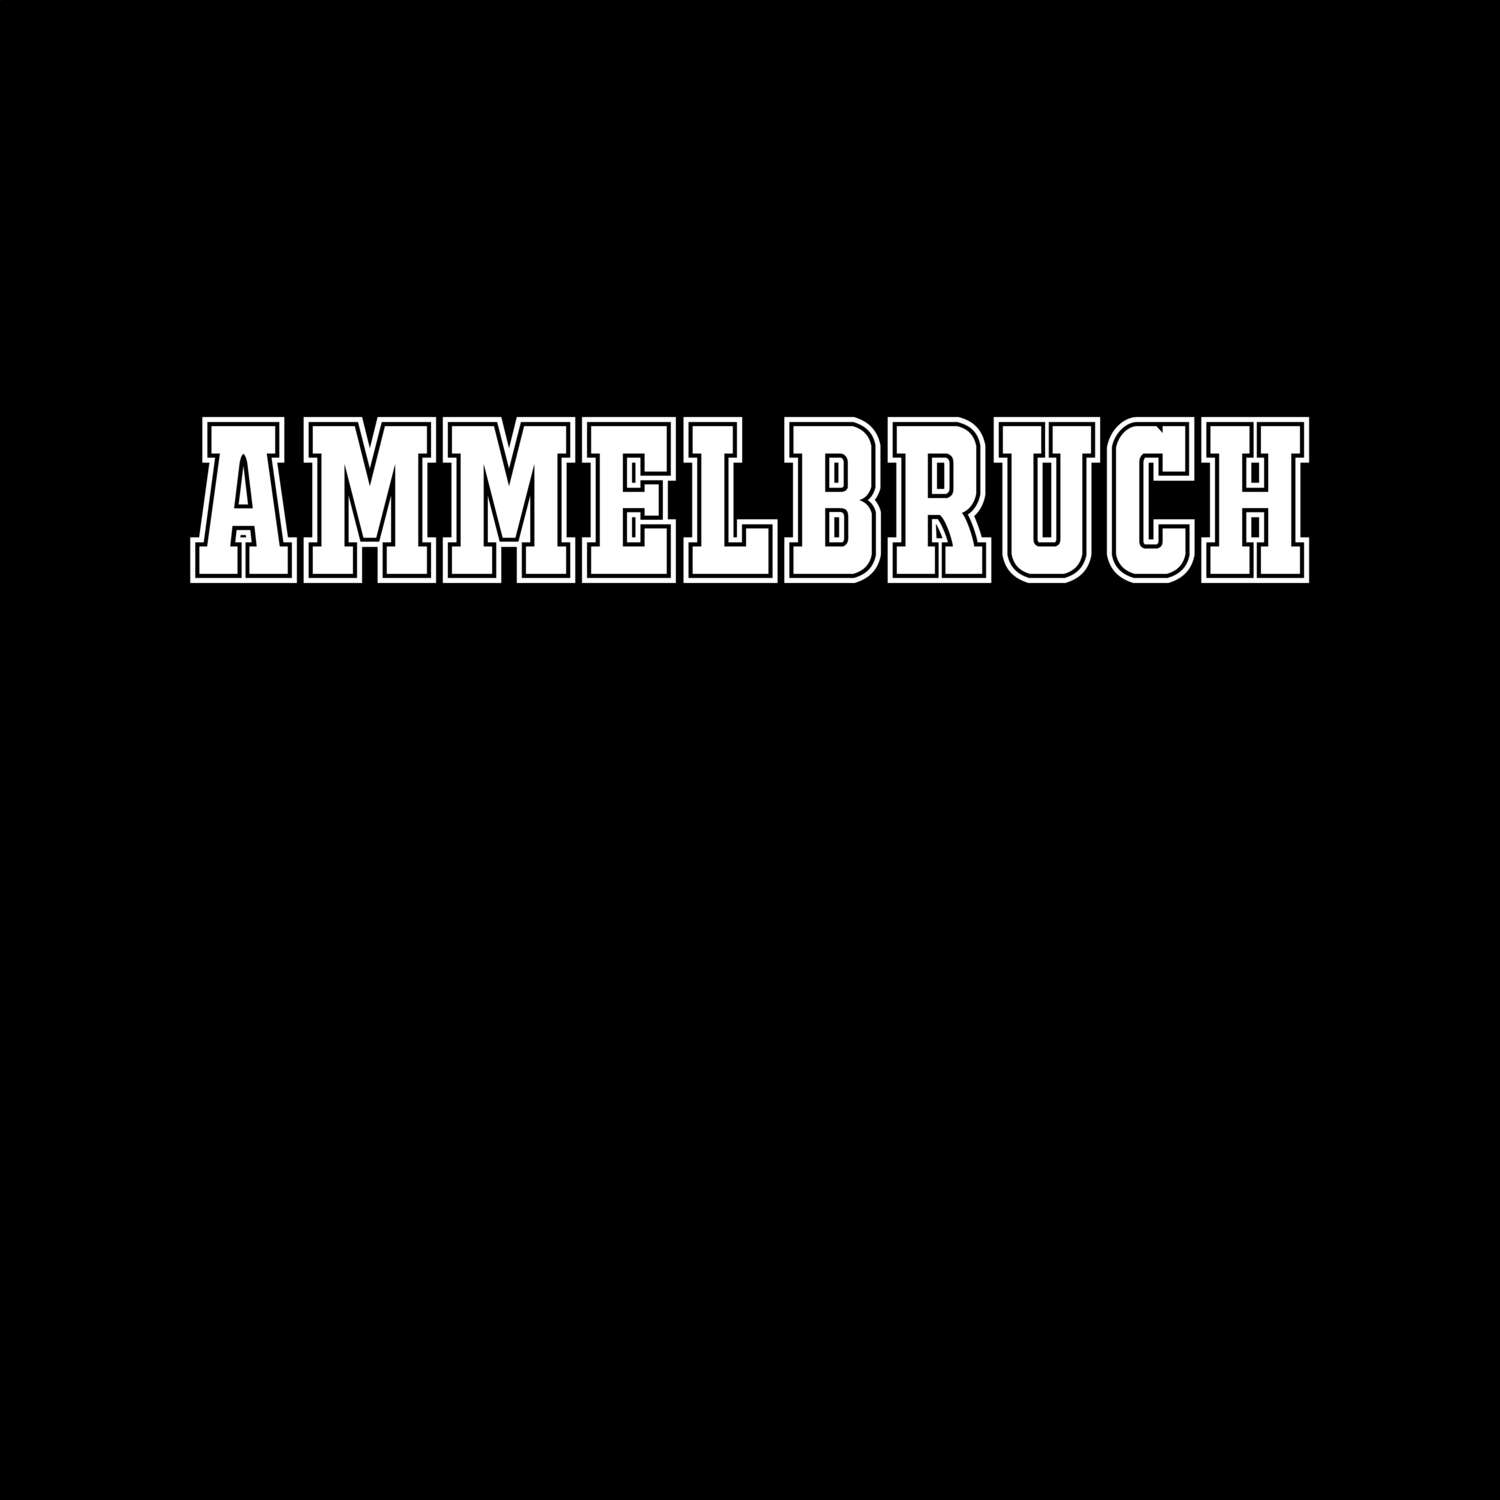 Ammelbruch T-Shirt »Classic«